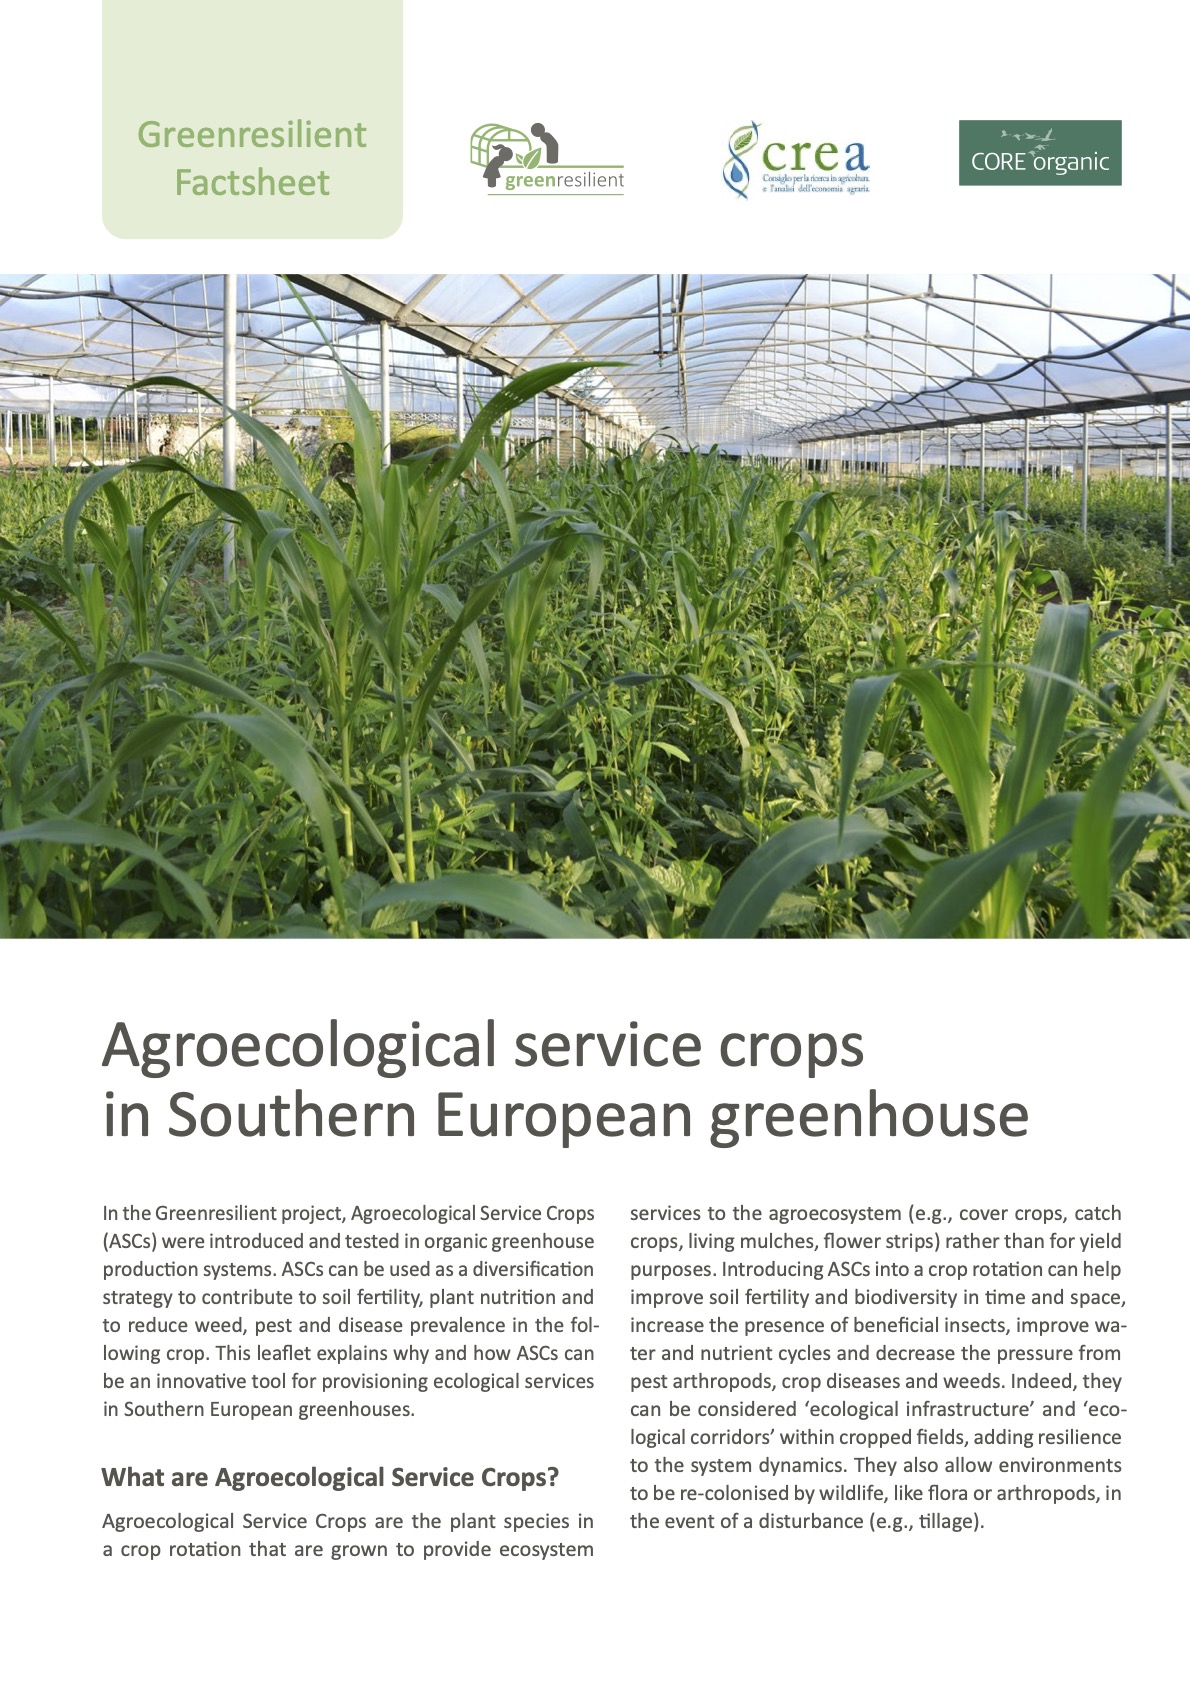 Colture di servizio agroecologico in serra dell'Europa meridionale (Greenresilient Factsheet)